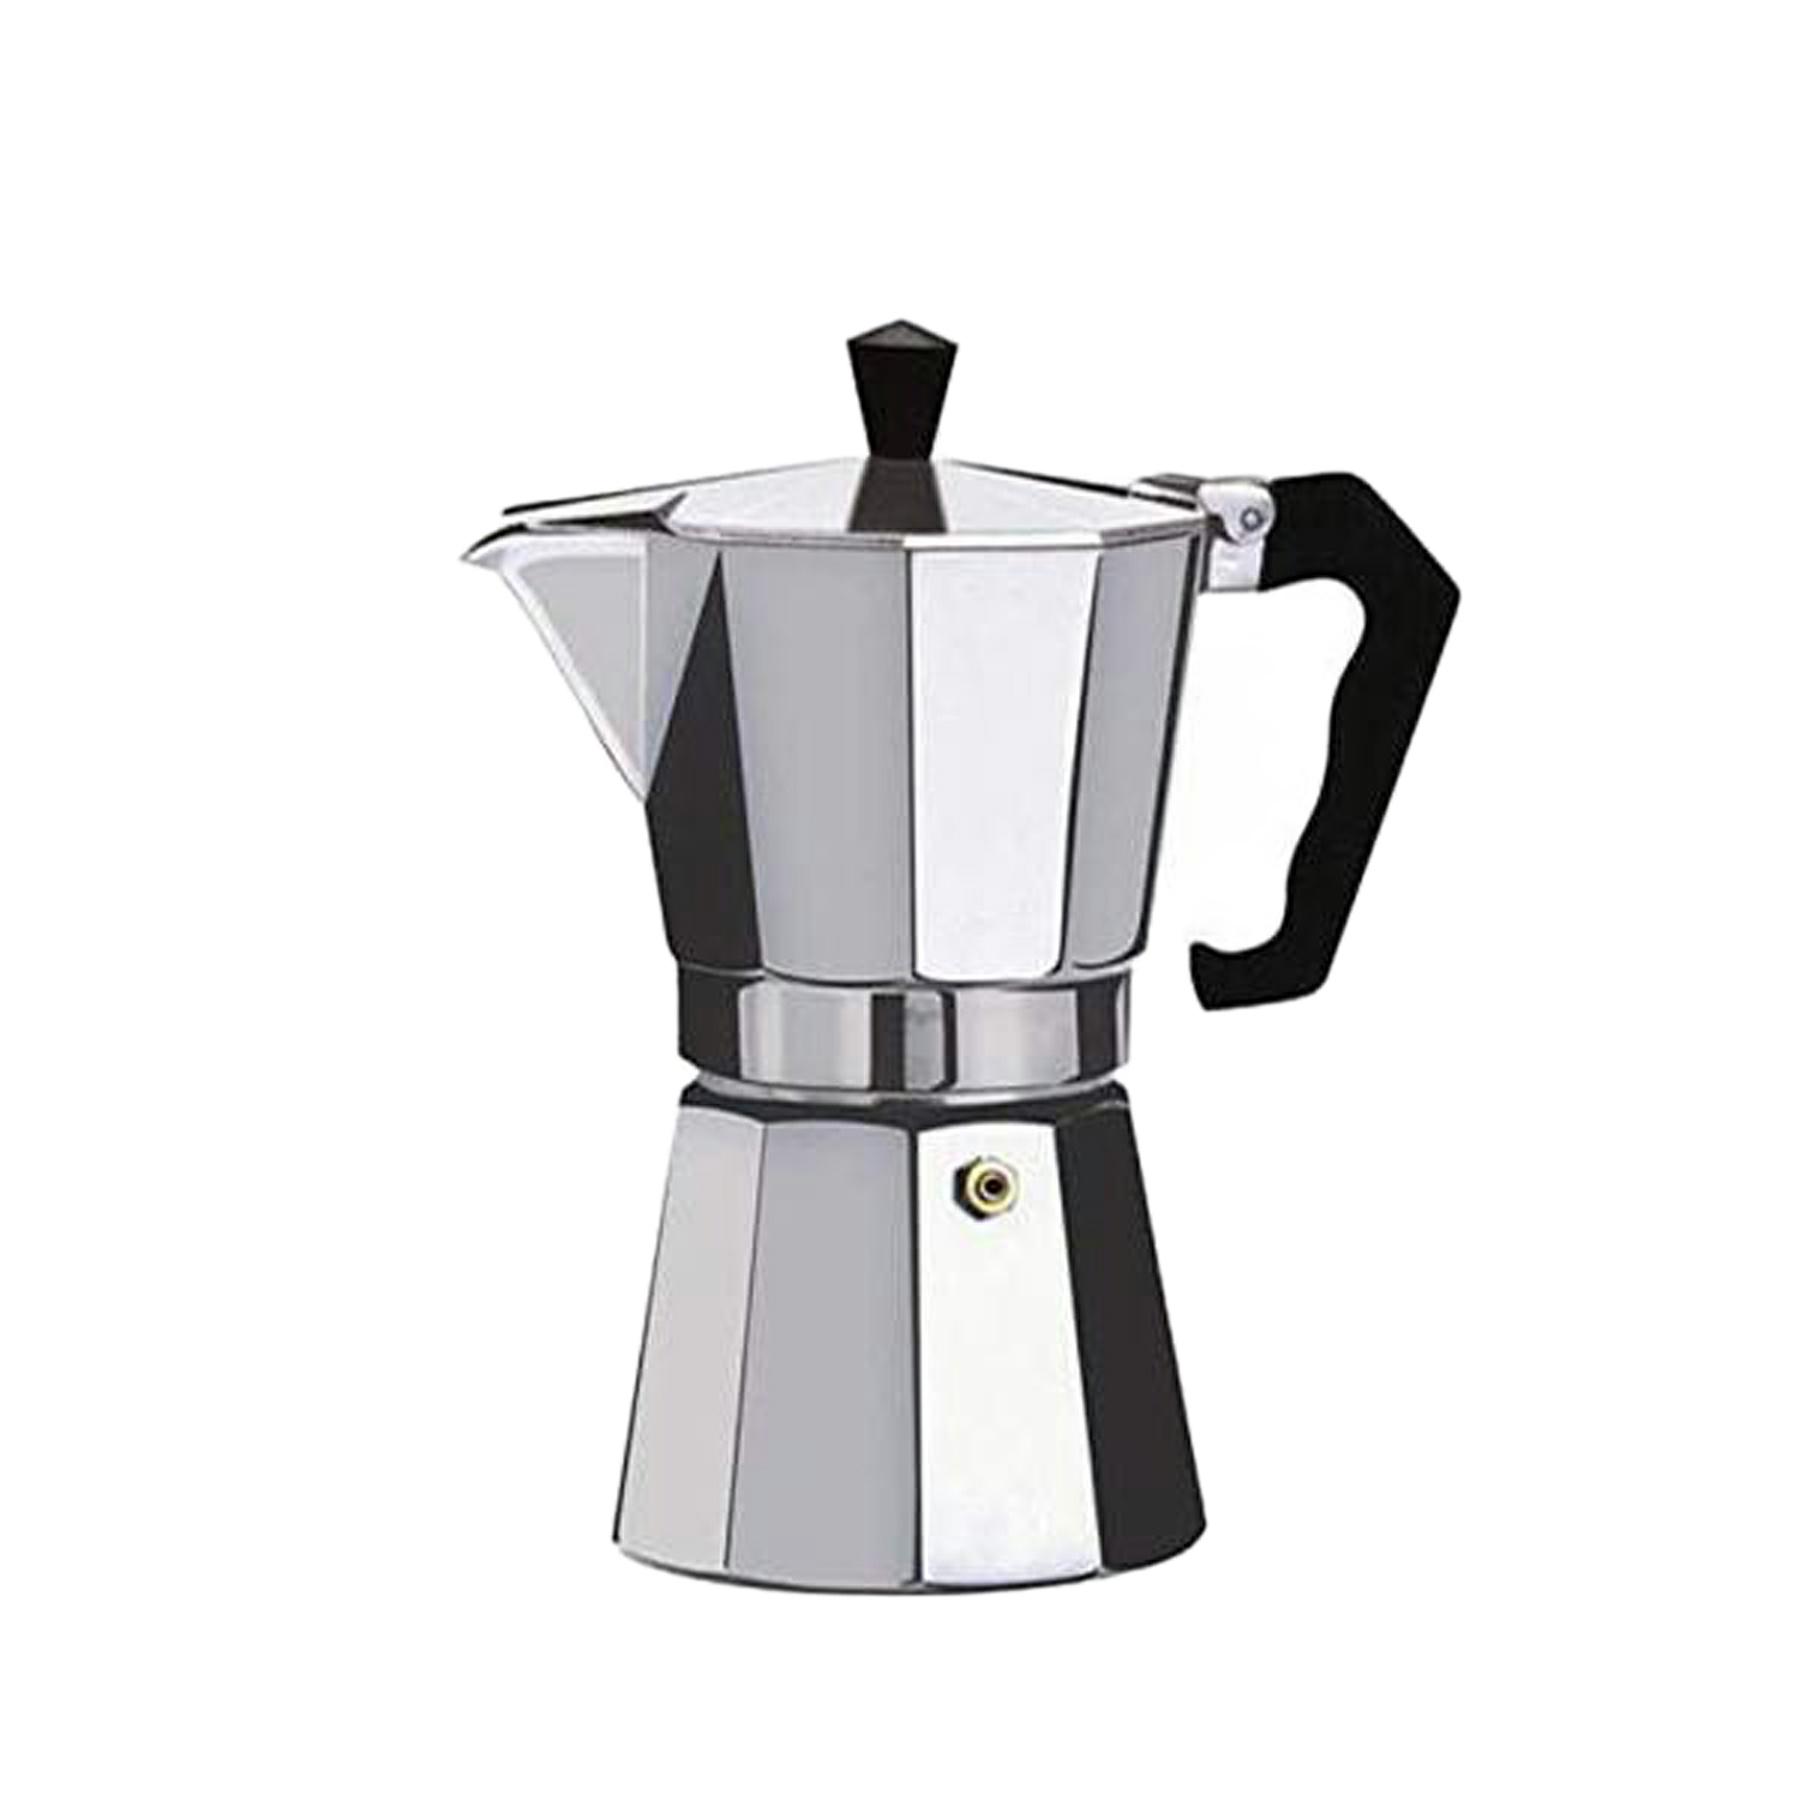 قهوه ساز مدل coffee 3 cup کد 34003